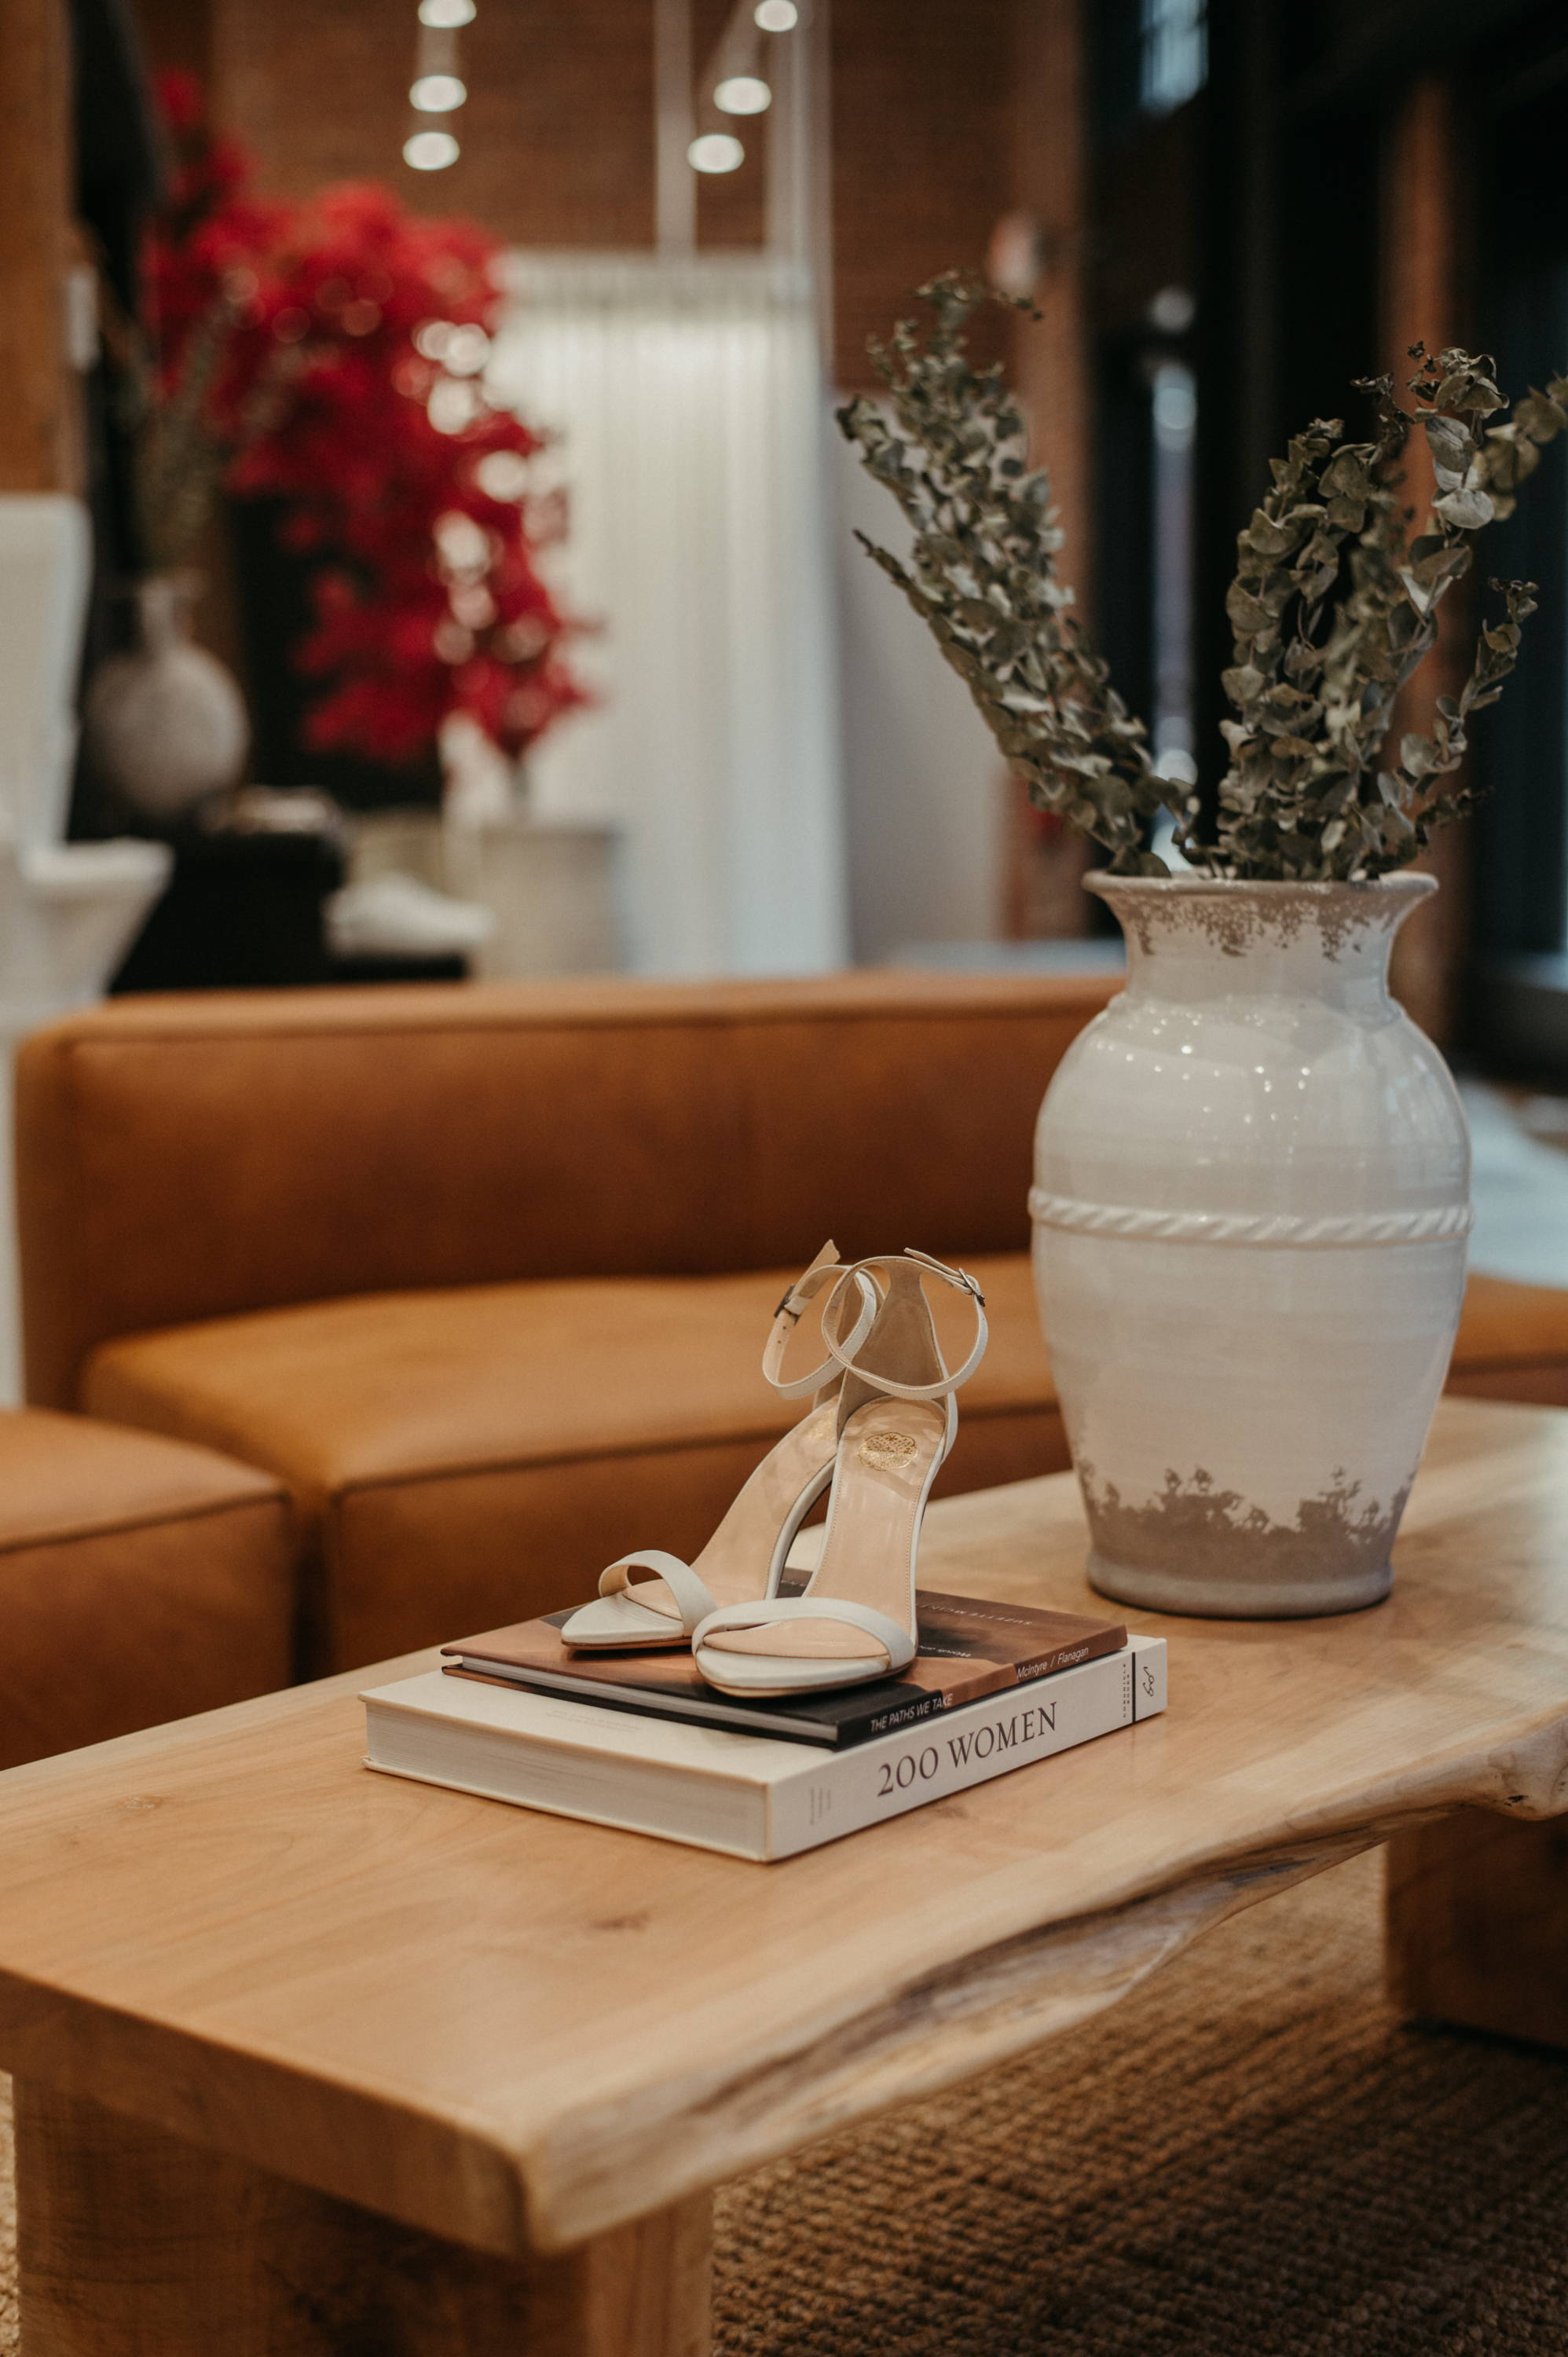 Pair of heels on coffee table